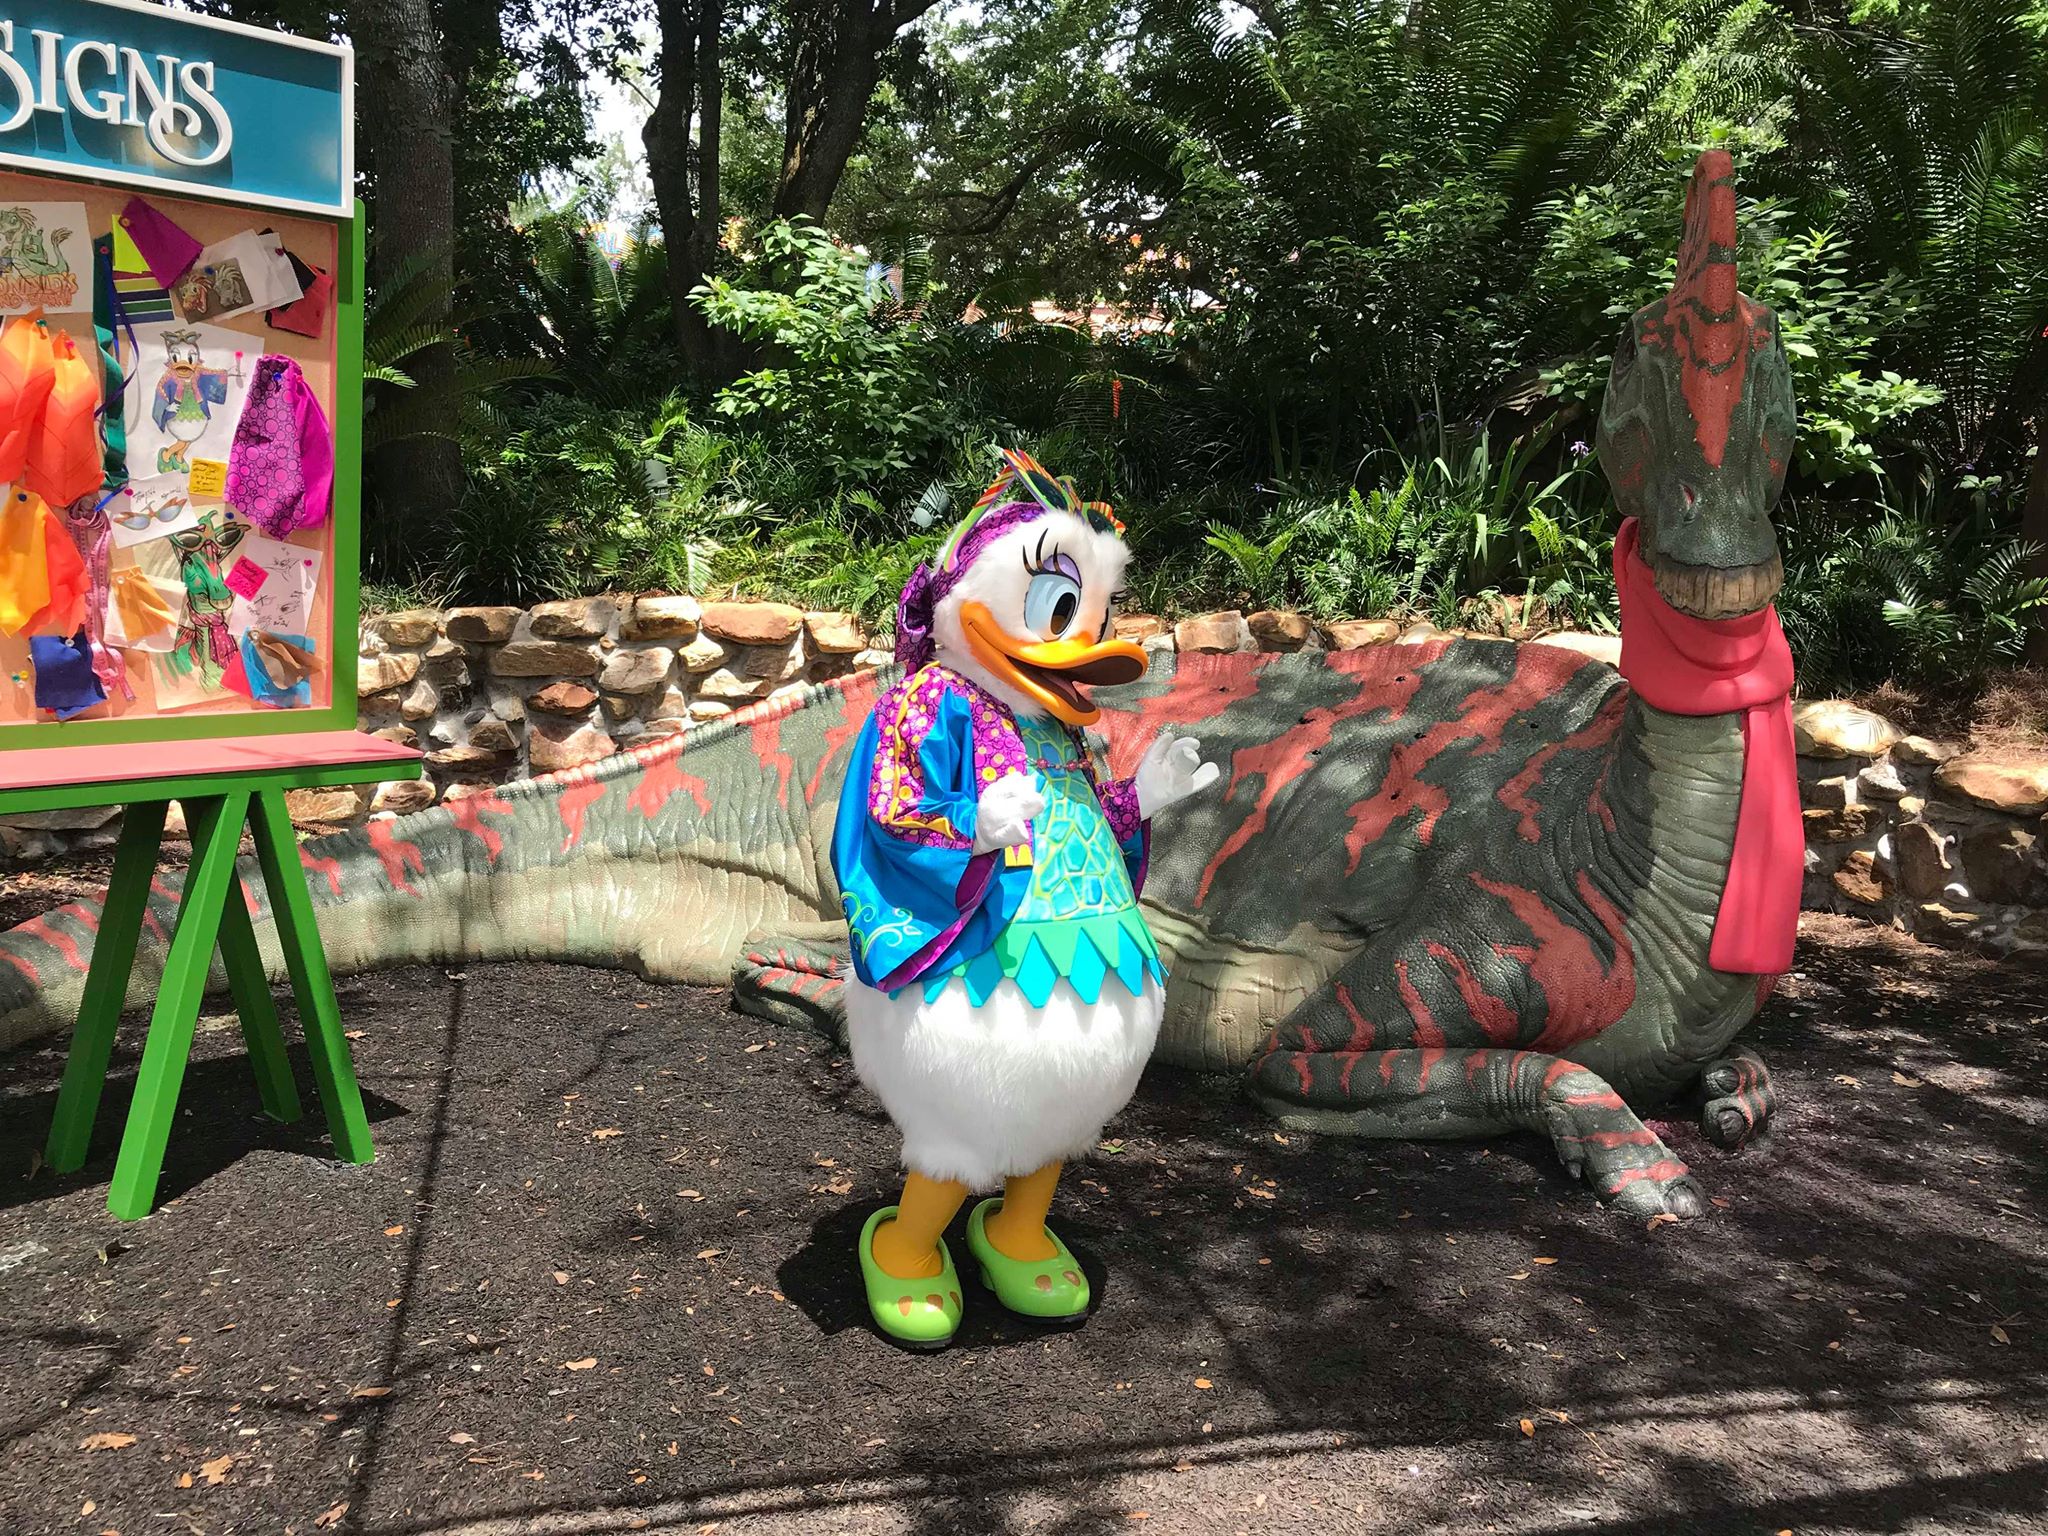 Donald's Dino-Bash! Kicks Off Today in Animal Kingdom